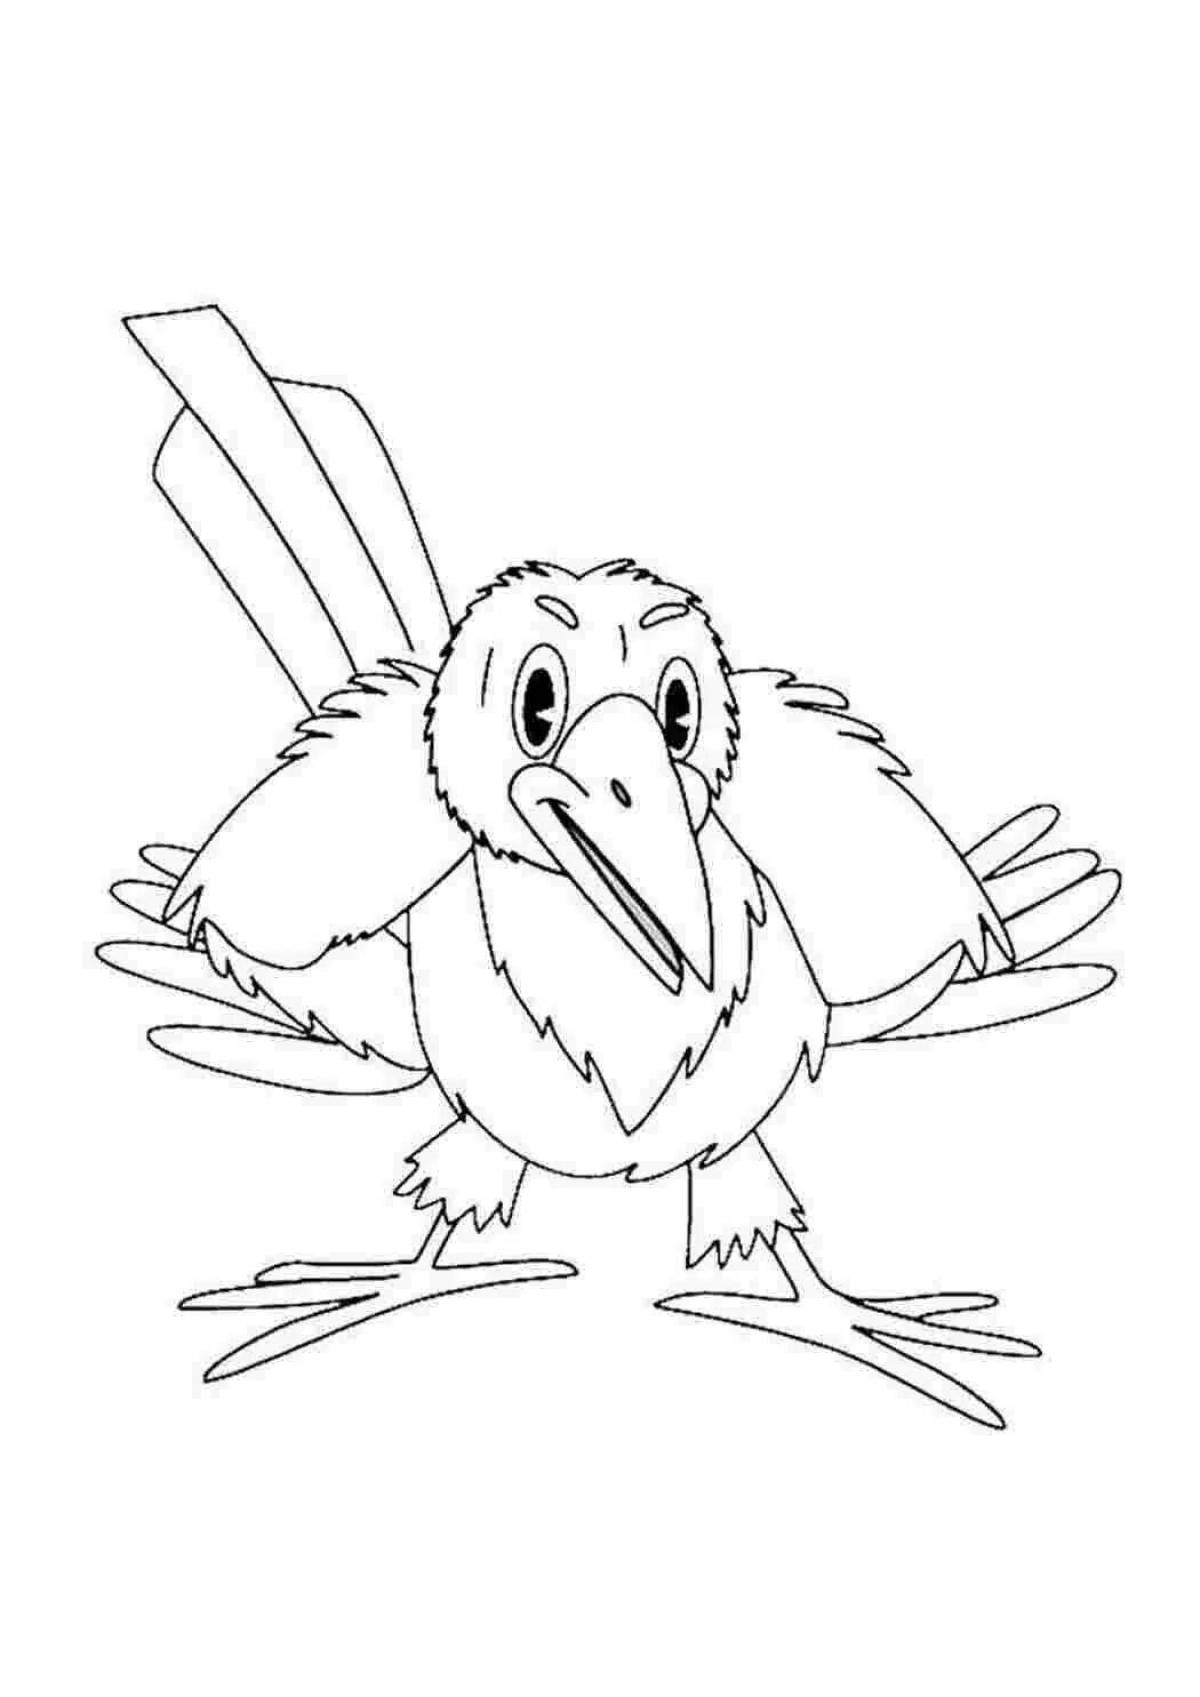 Раскраска жирная ворона для детей 3-4 лет